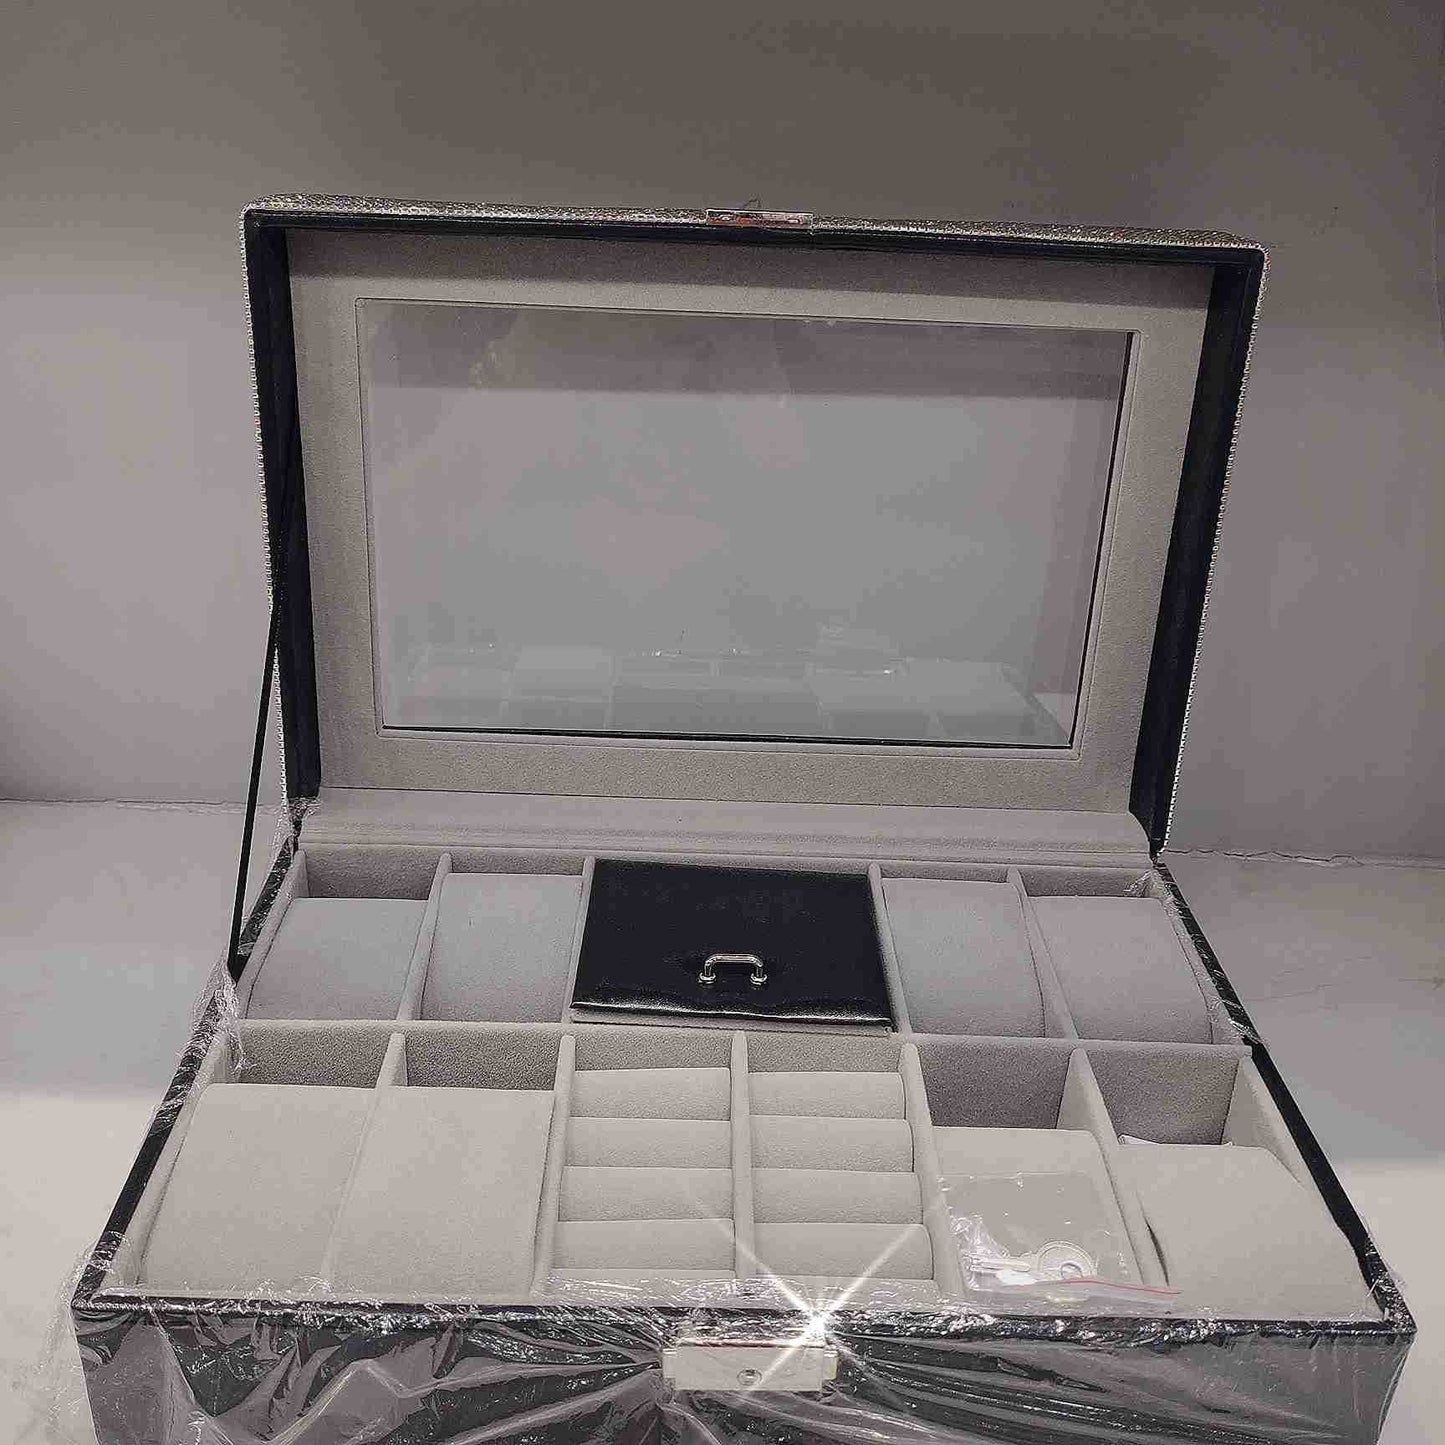 Sparkling Diamond Luxury Jewelry Storage Box